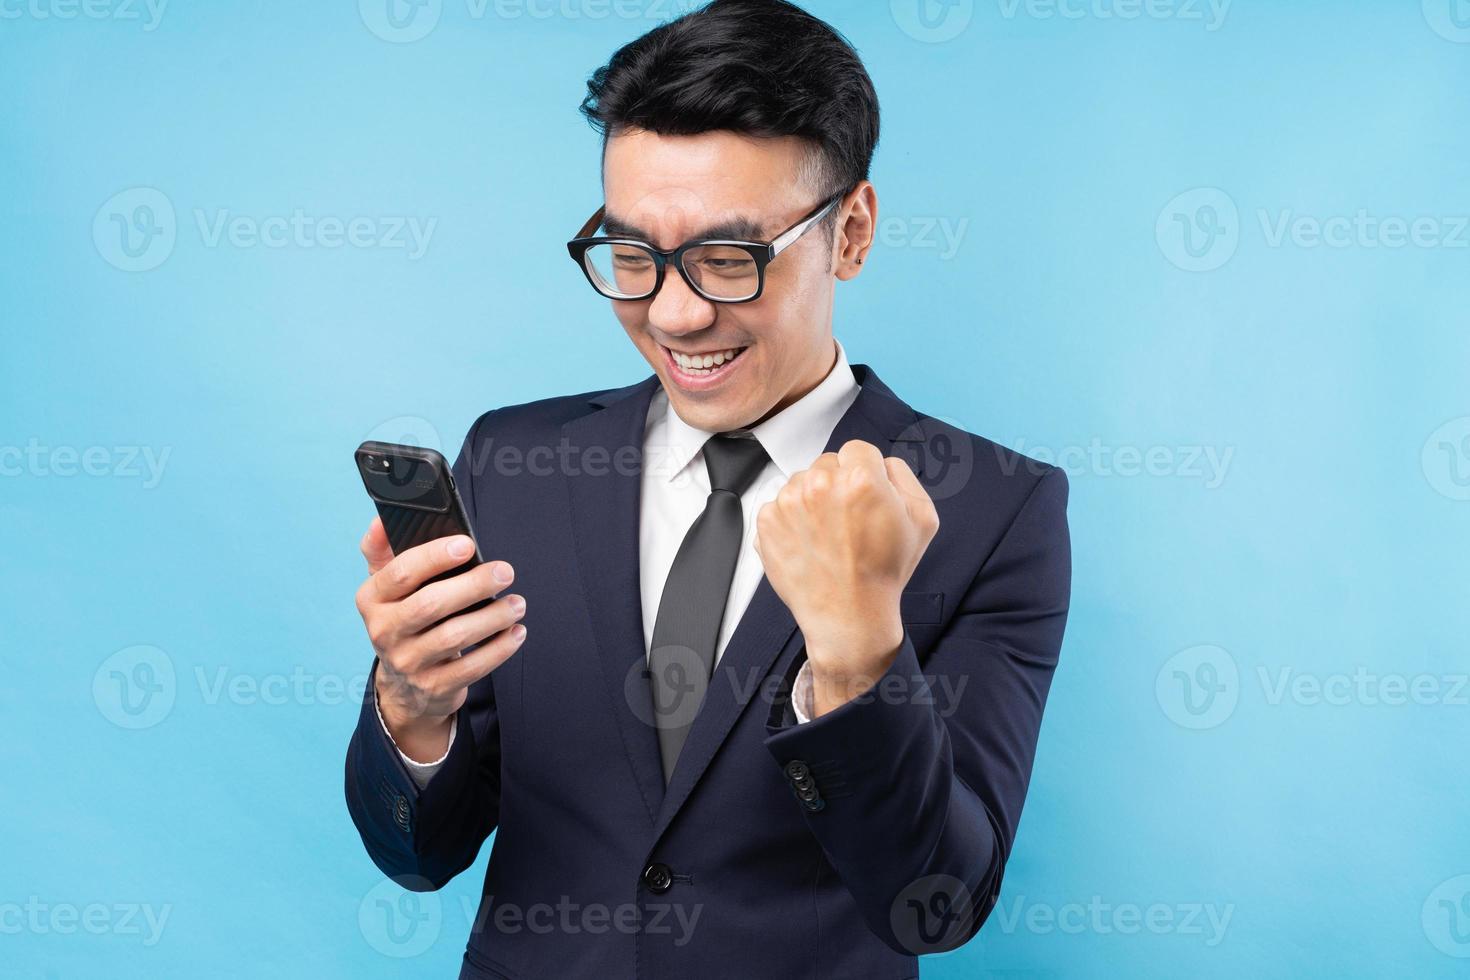 homme d'affaires asiatique portant un costume utilisant un smartphone et ressentant la victoire photo